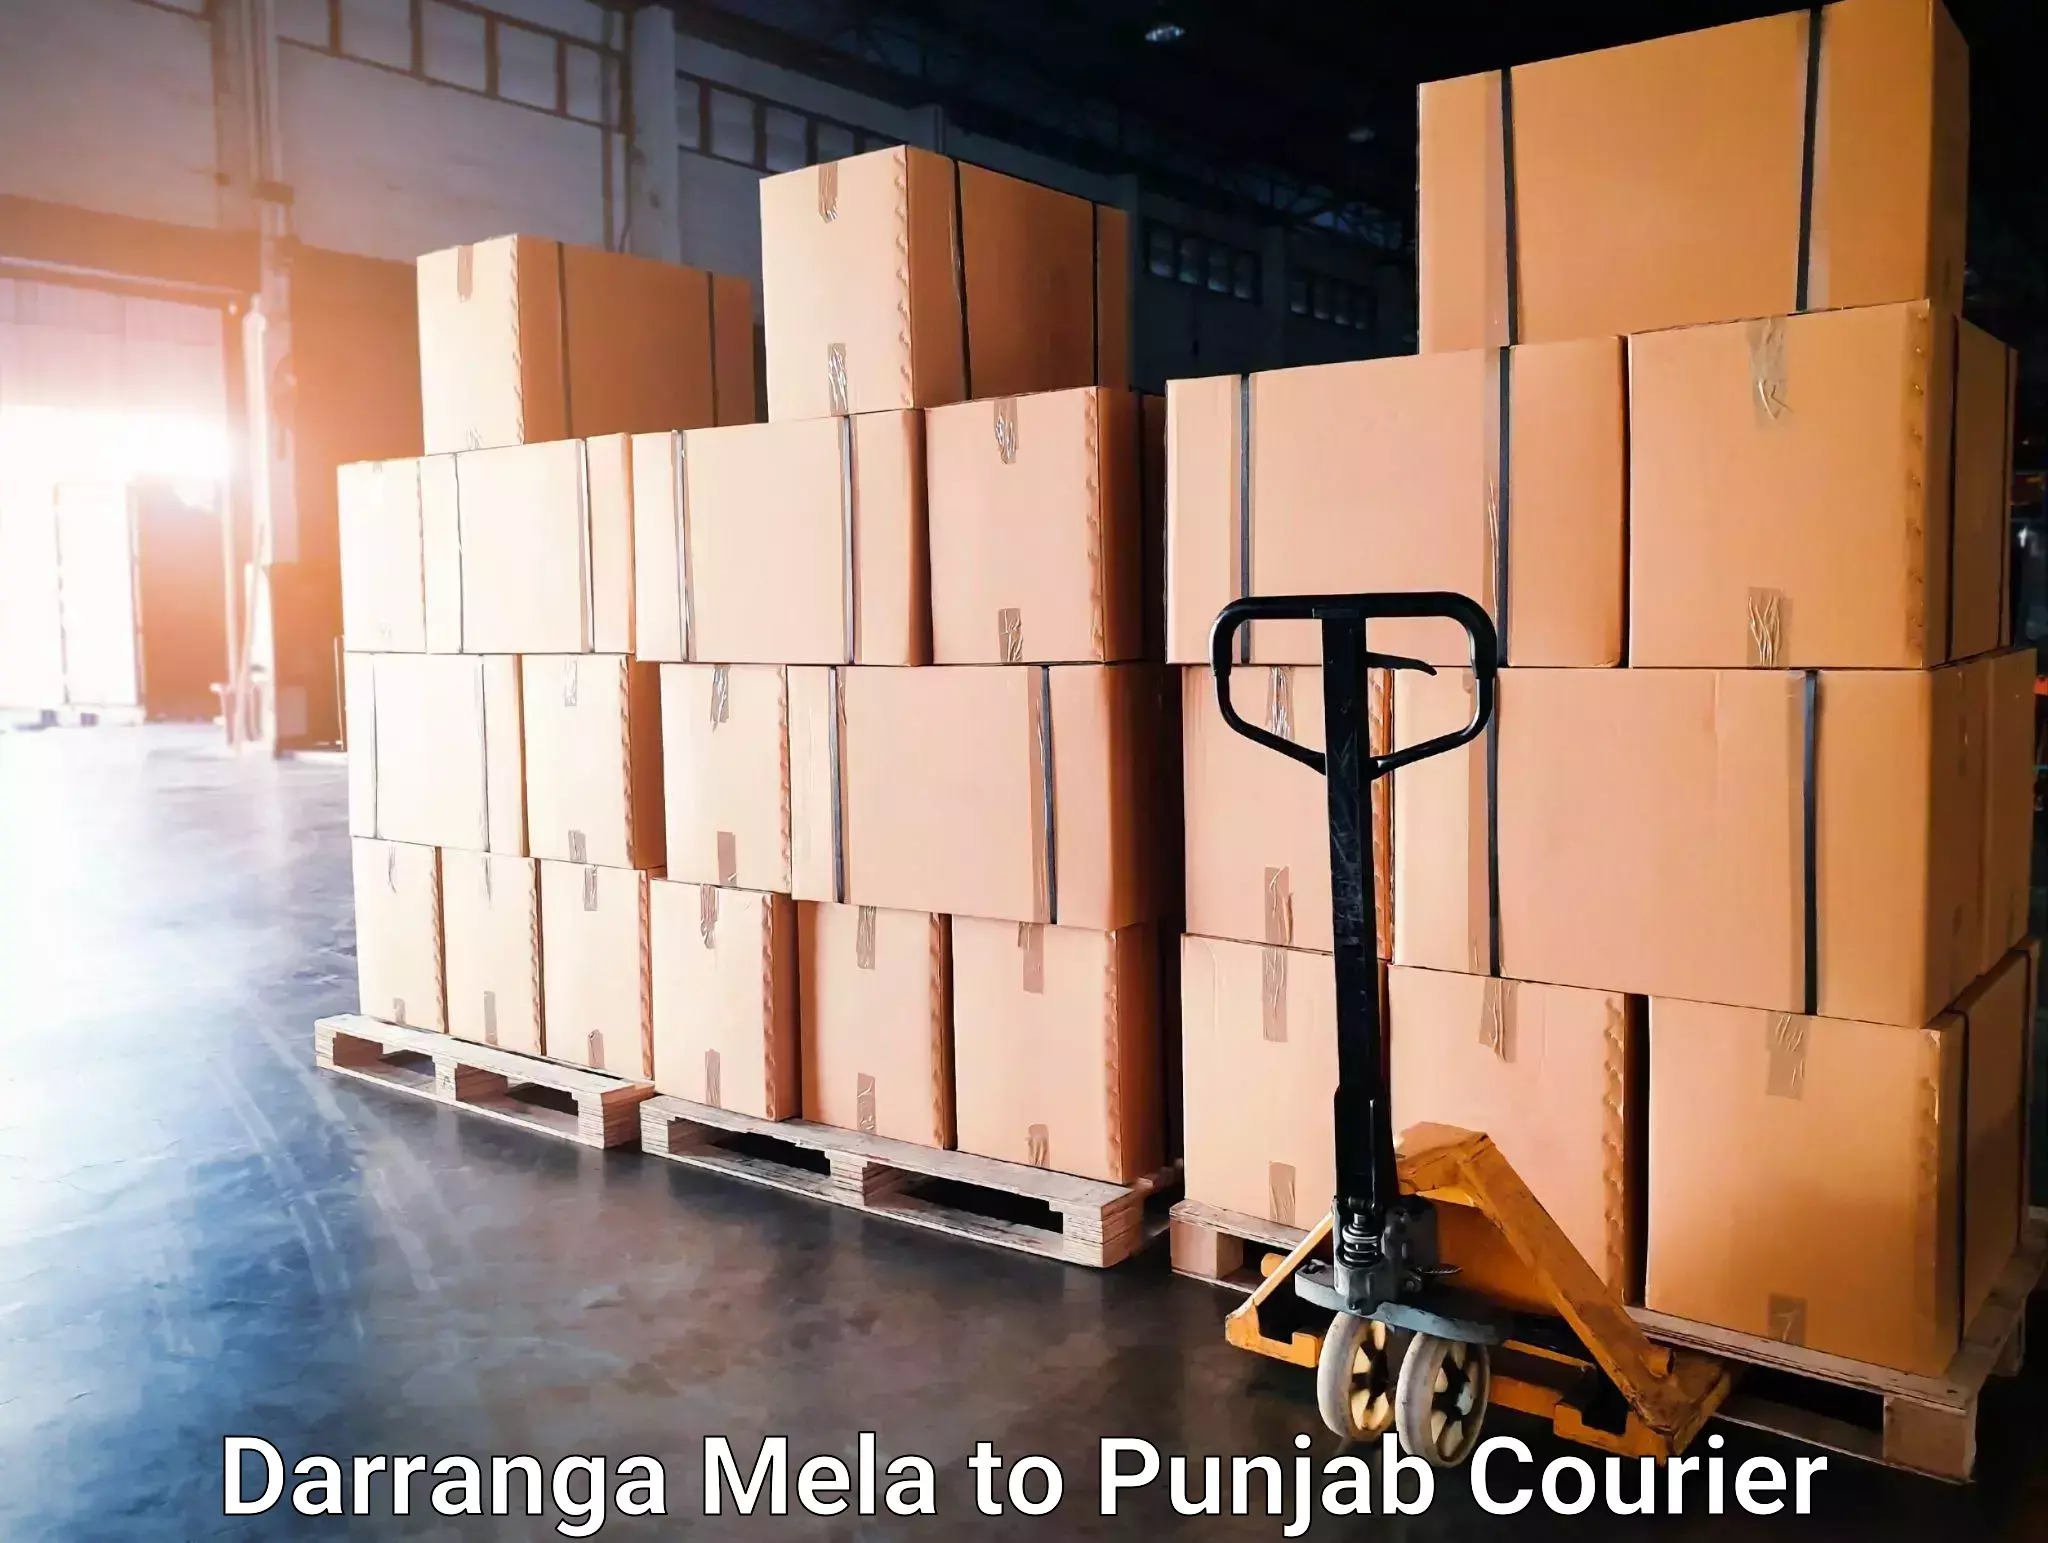 Courier app Darranga Mela to Kotkapura